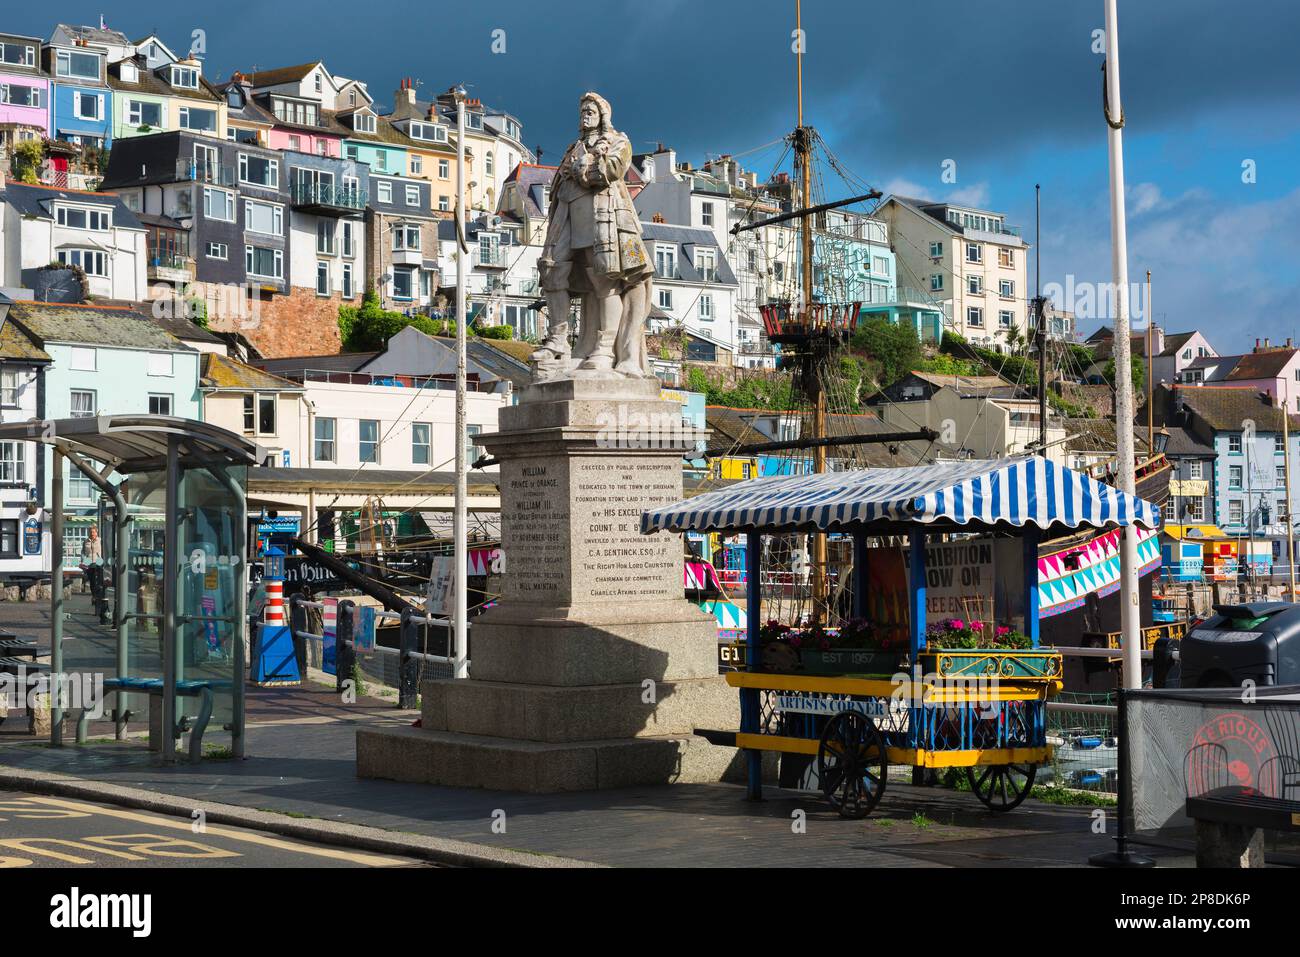 Devon Coast Town, vista della statua di re William lll situato sul molo nella città costiera di pescatori di Brixham, Devon UK Foto Stock